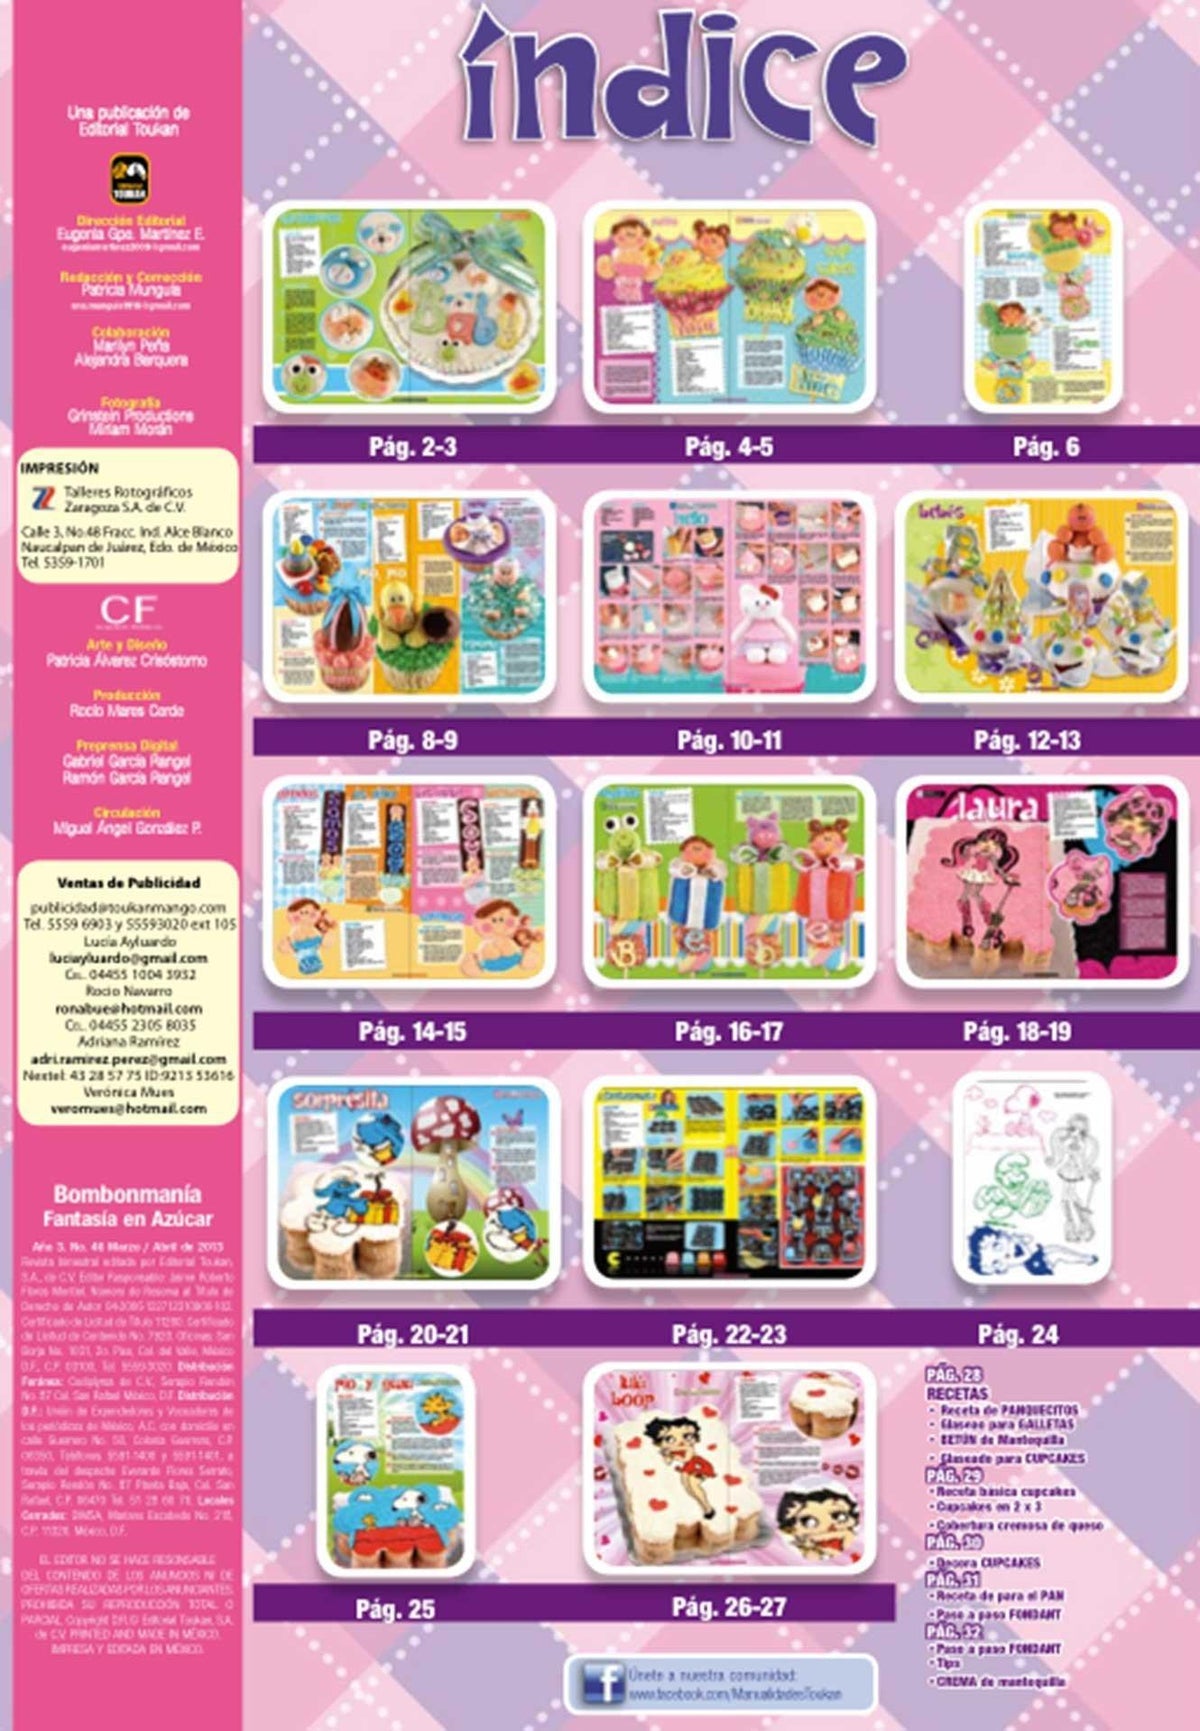 Bombonmania 46 - Pasteles Cup Cakes y otras delicias para Baby Shower - Formato Digital - ToukanMango